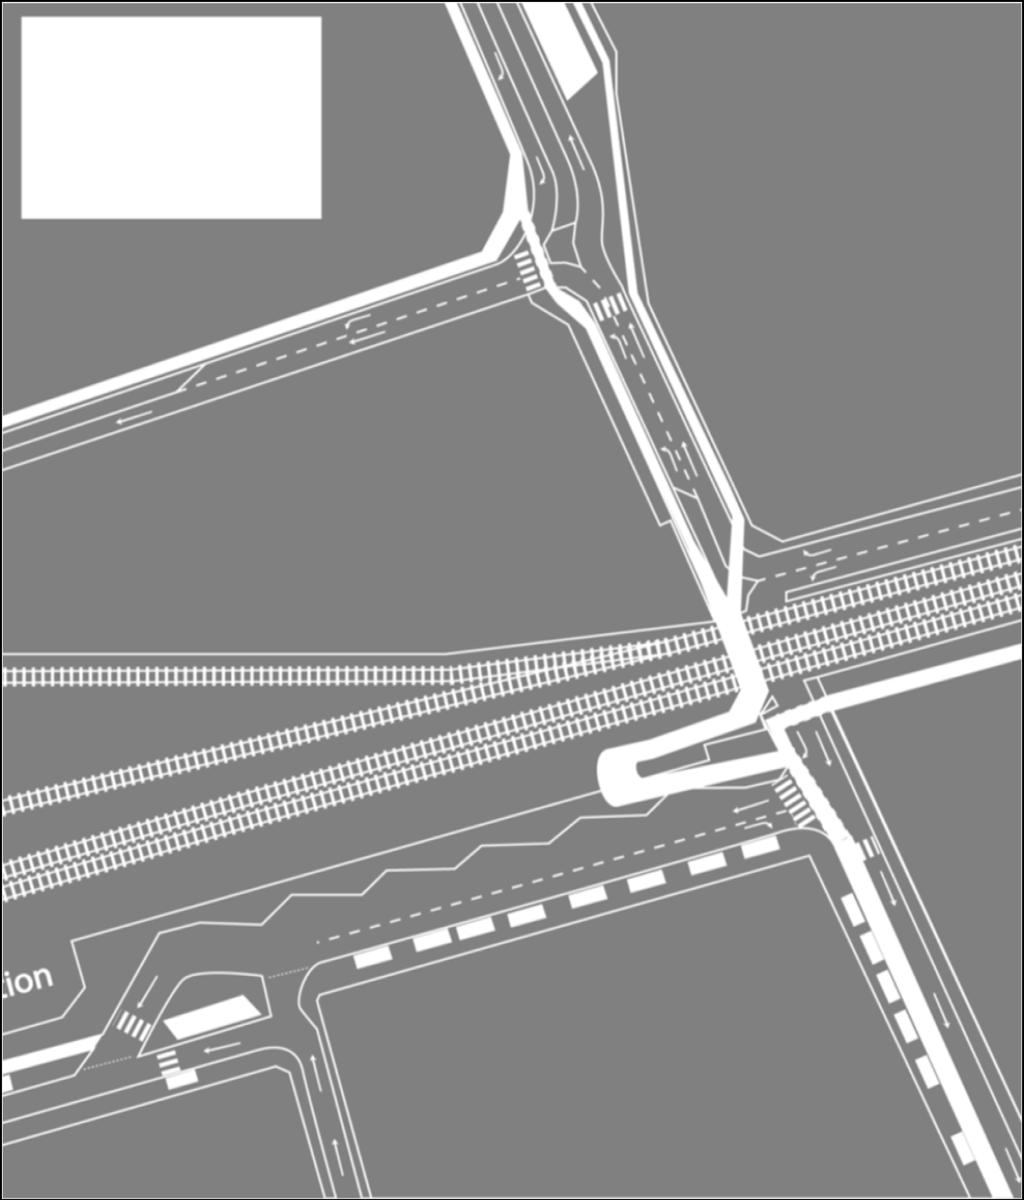 Verkeer met bestemming station kan aan de pendelparkings aan de Keirlandse Zillen terecht, en de pendelaars kunnen dan via de verlengde voetgangerstunnel naar het station of de perrons.